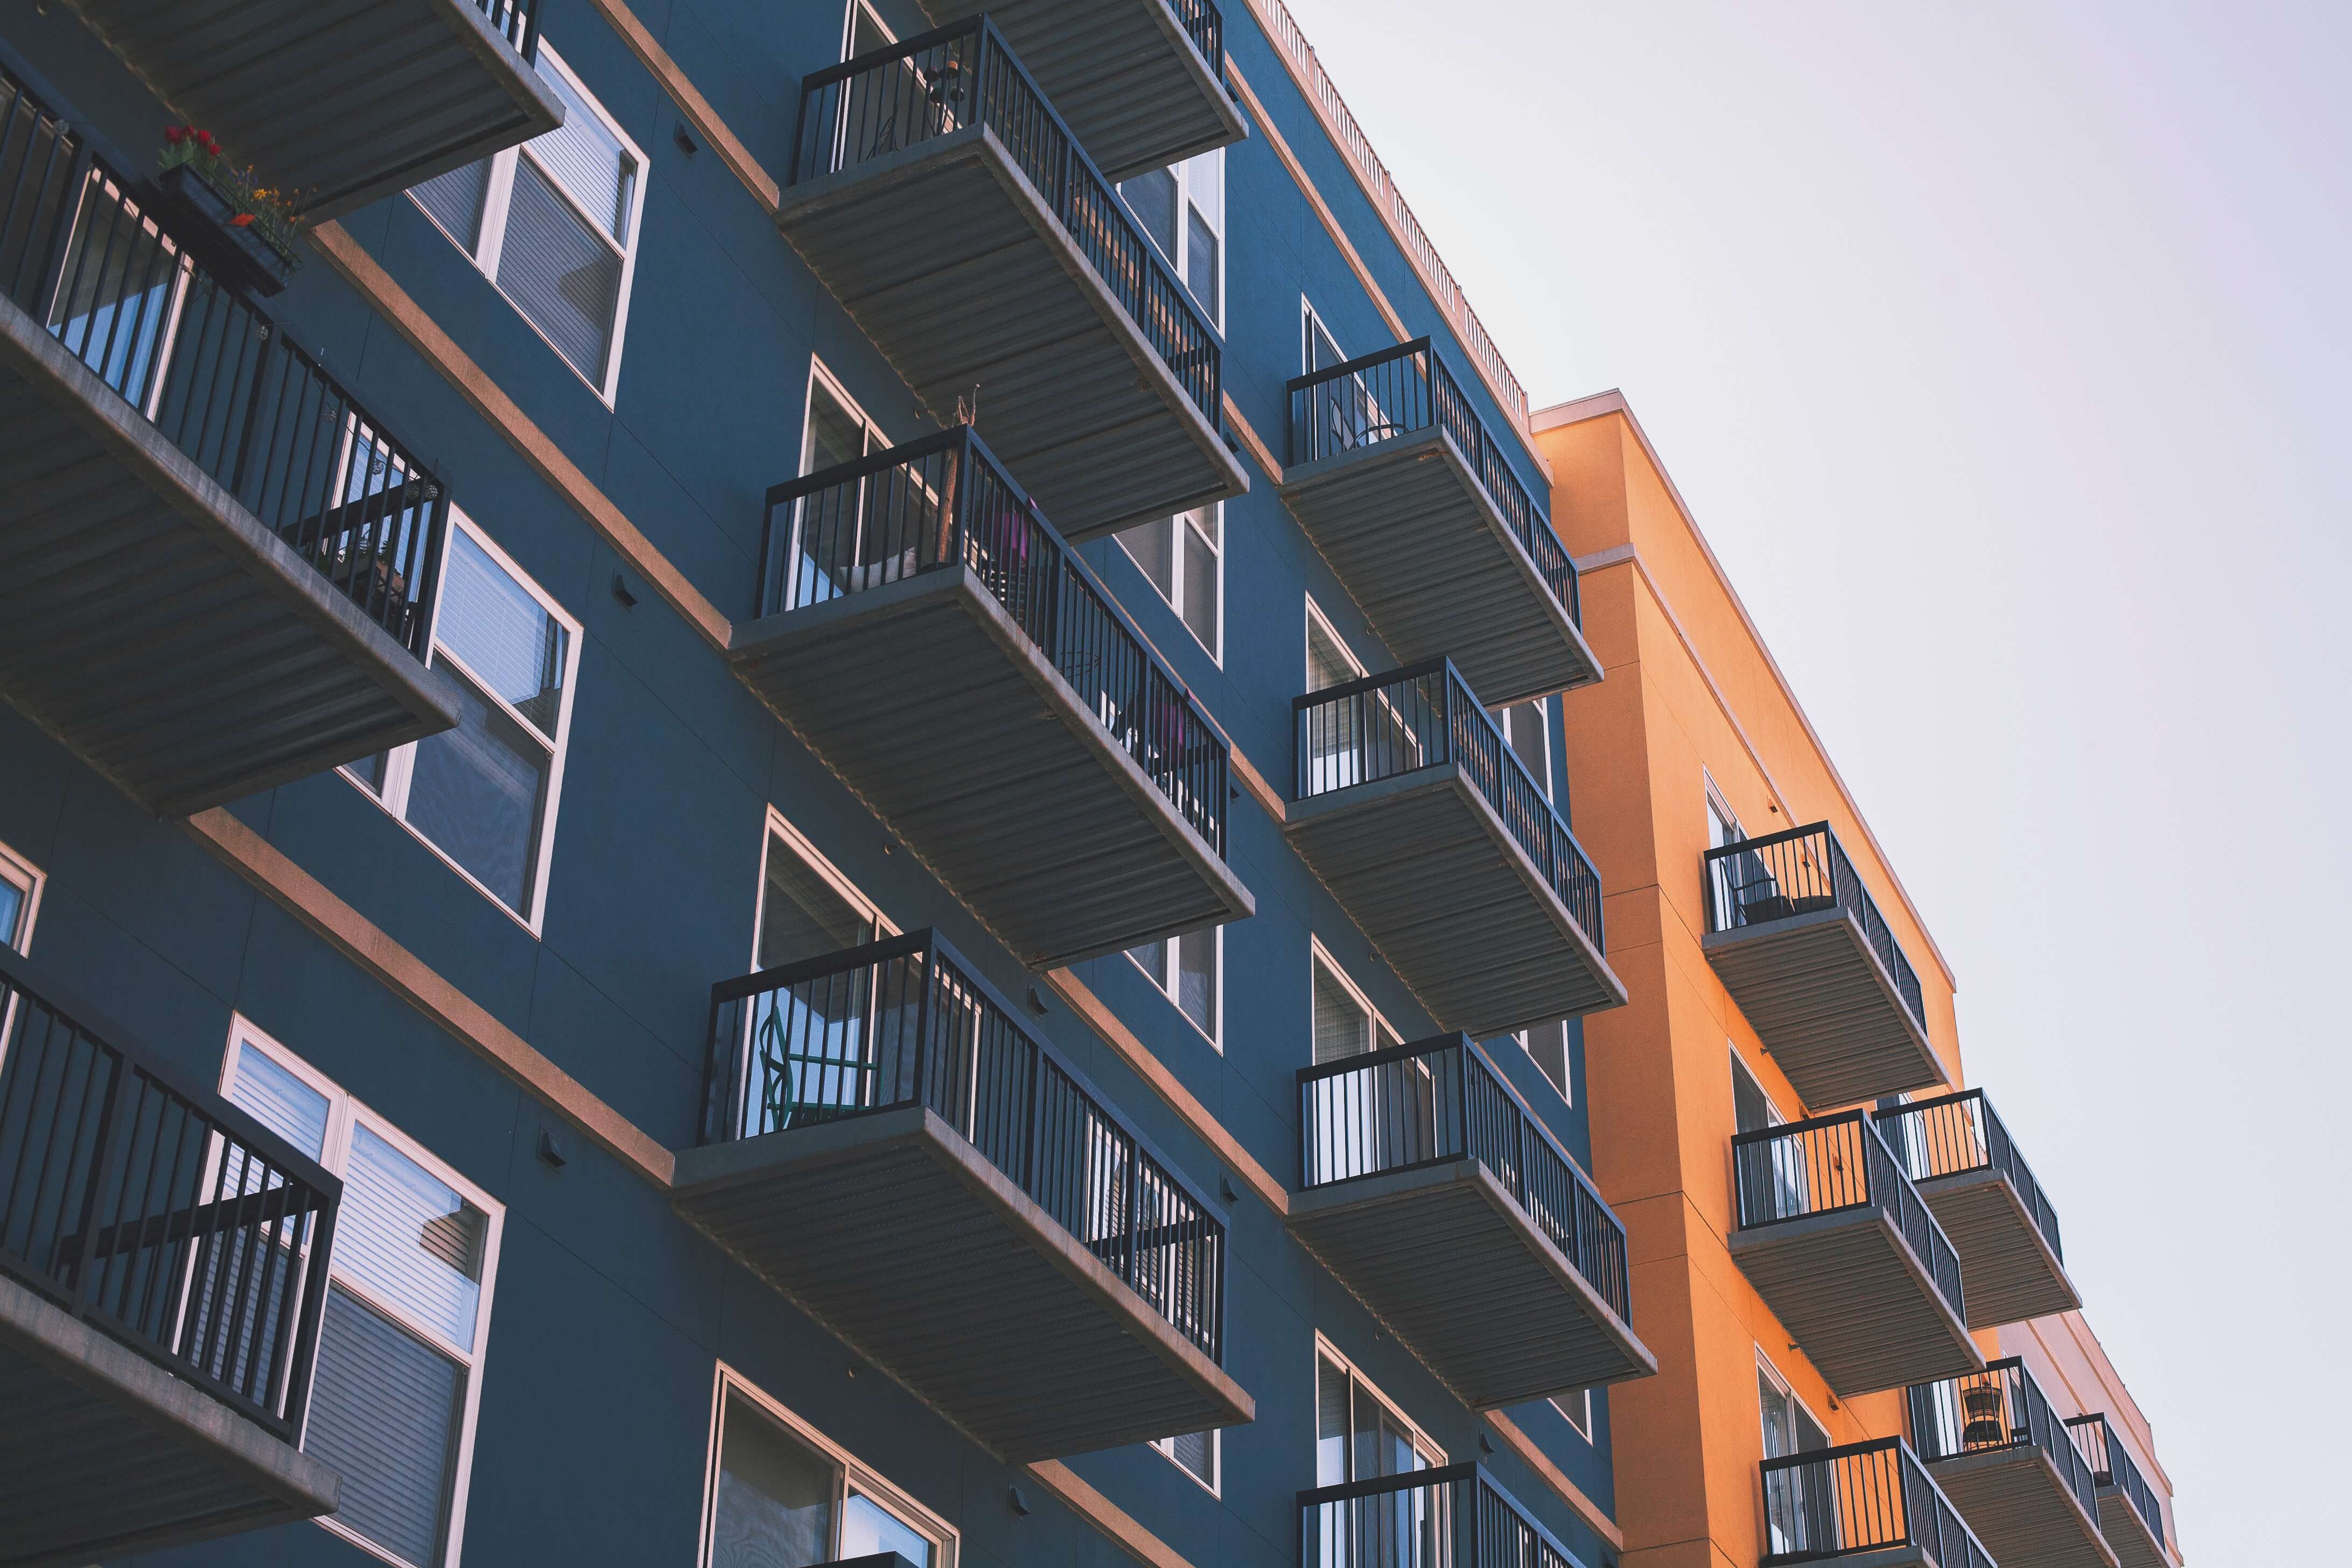 Od 2020 roku deweloper łatwiej wybuduje mieszkania, bo sąsiedzi stracili prawo weta